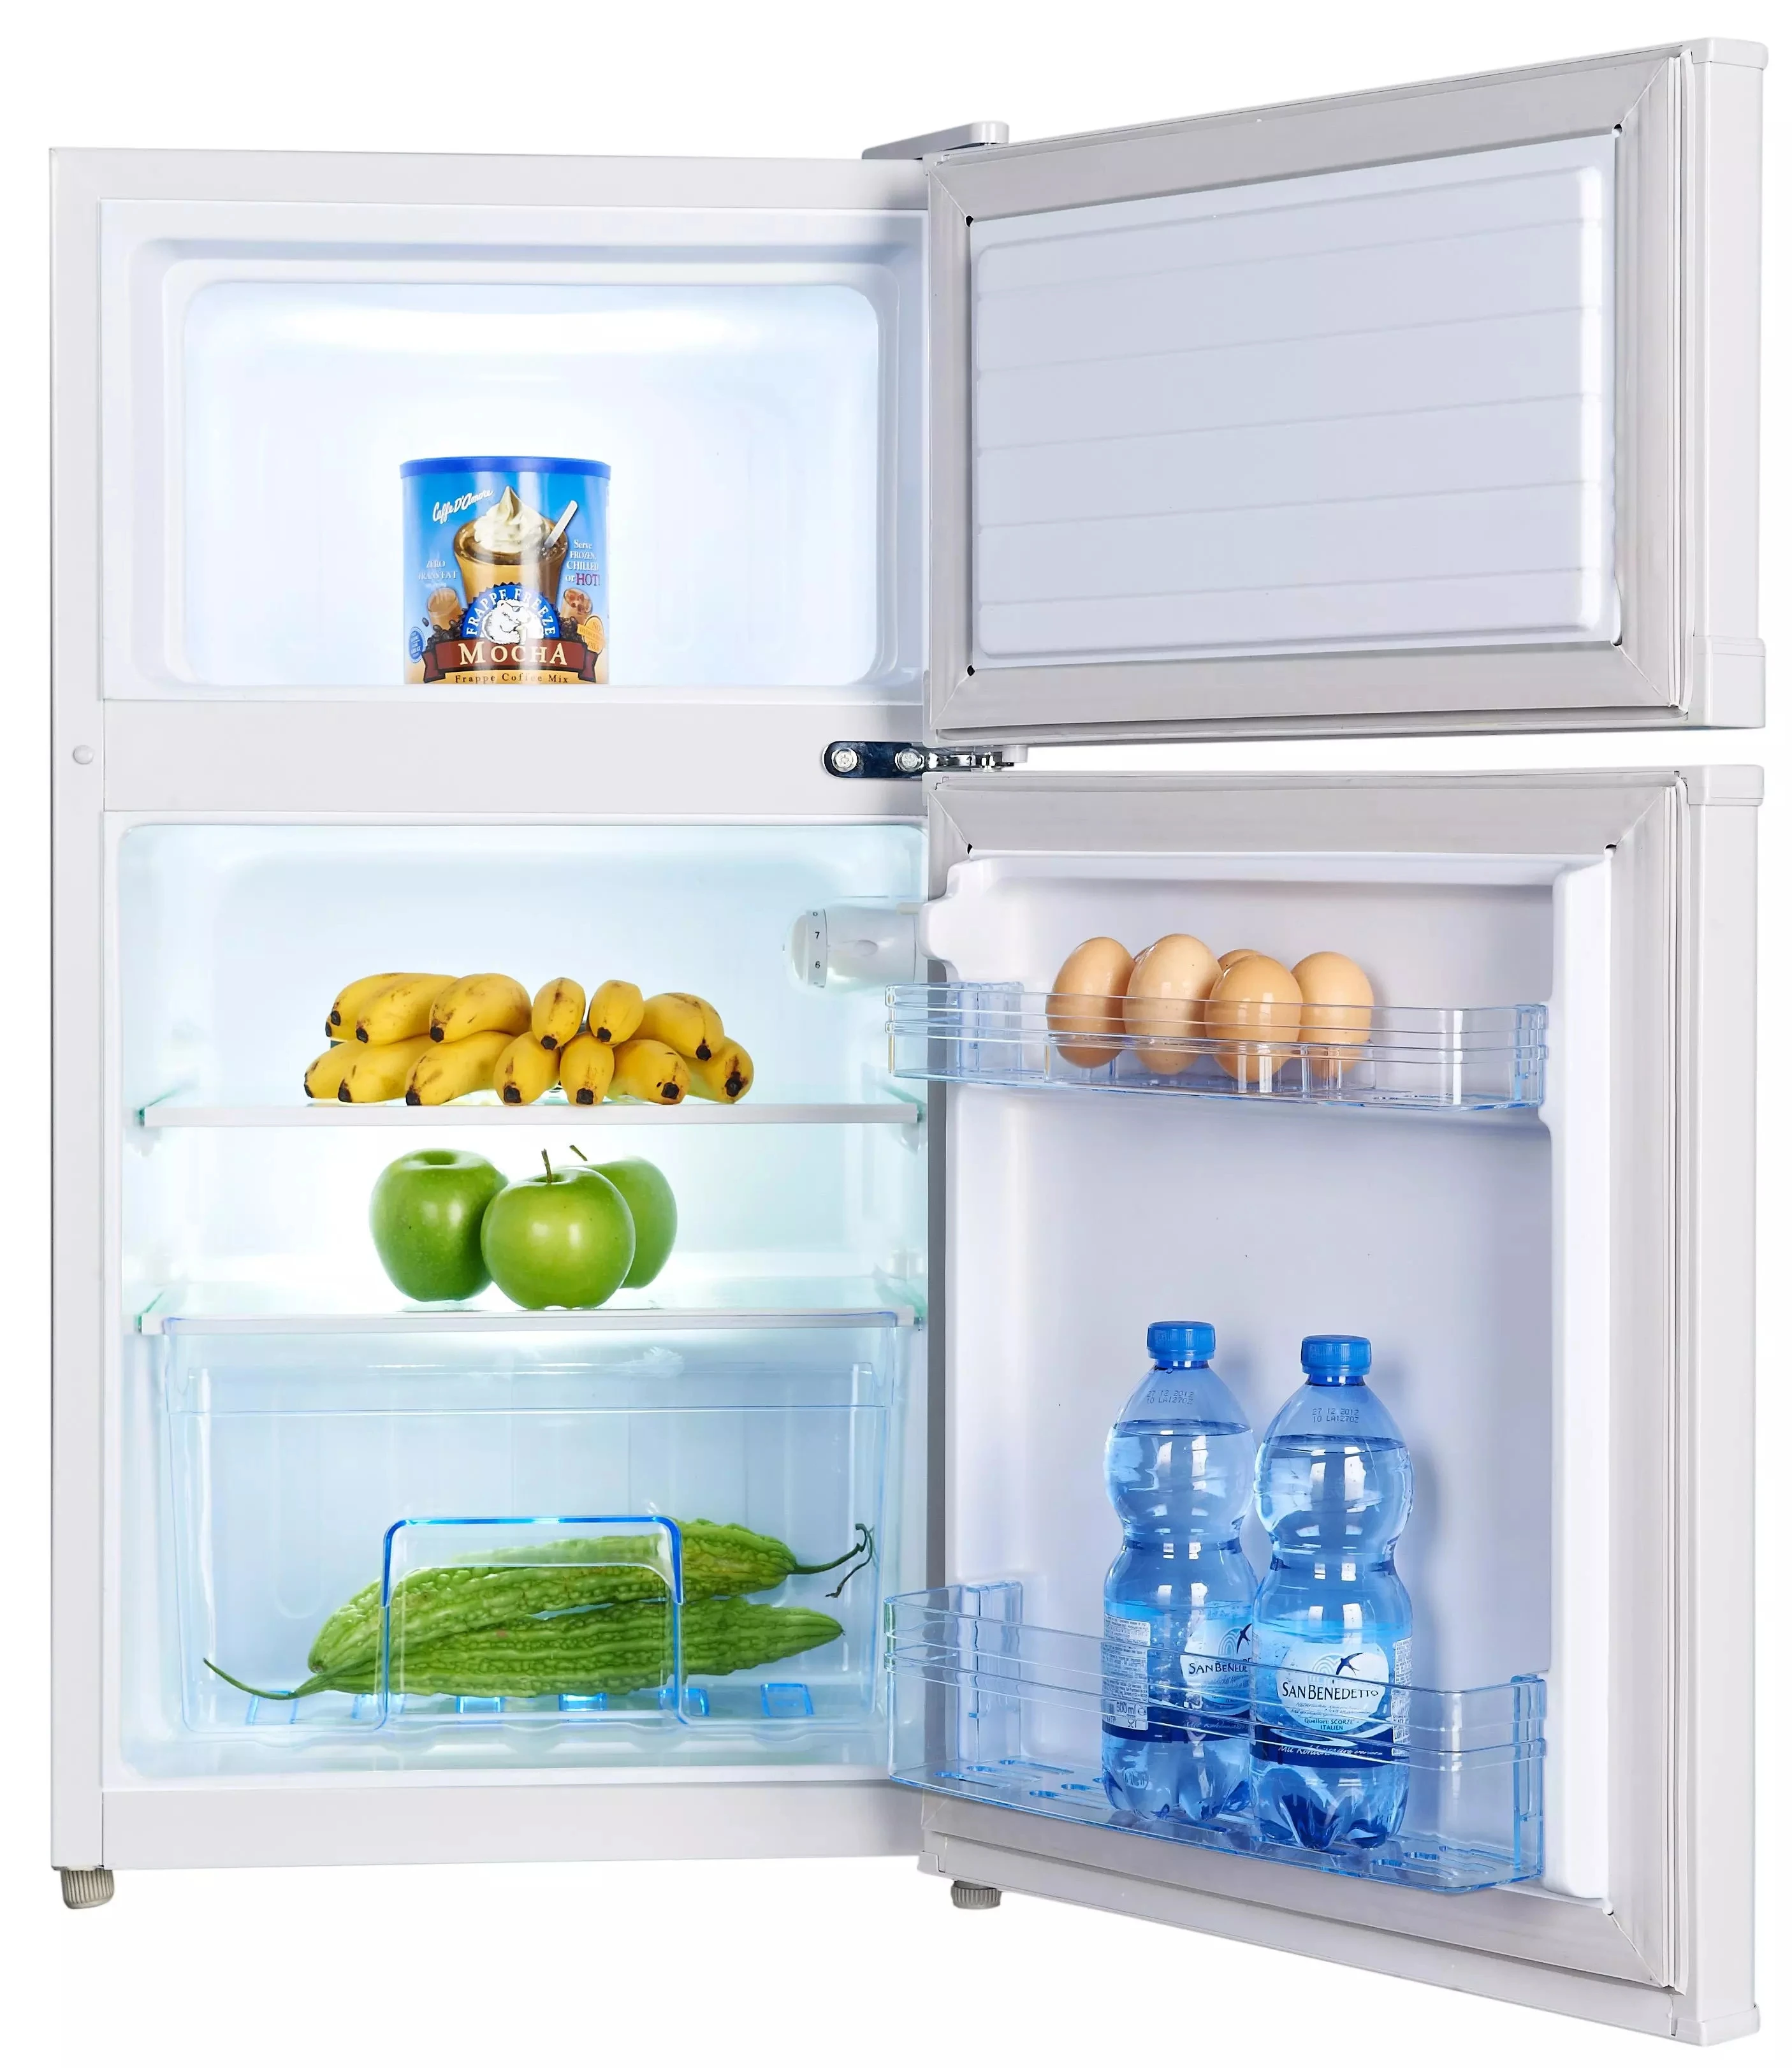 Купить маленький холодильник с морозильной камерой. Shivaki SHRF-91ds. Холодильник Шиваки двухкамерный. Shivaki холодильник маленький двухкамерный. Холодильник Shivaki маленький с морозилкой.